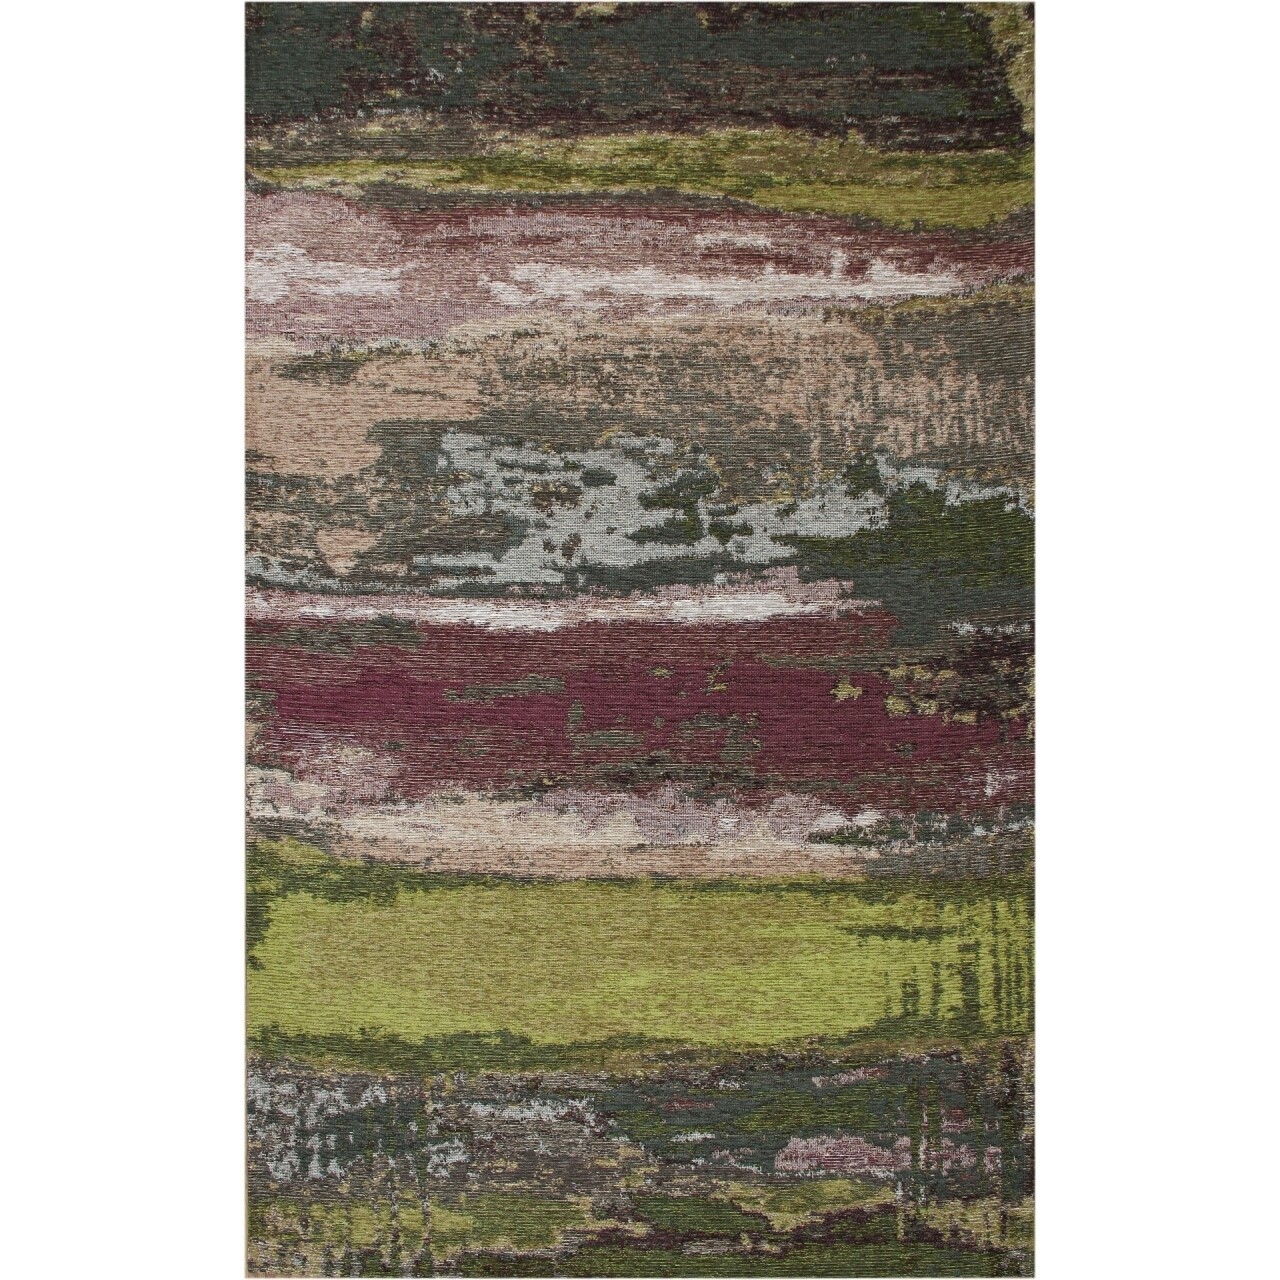 Eko környezetbarát szőnyeg, sm 12 - zöld xw, 100% akril, 160 x 230 cm